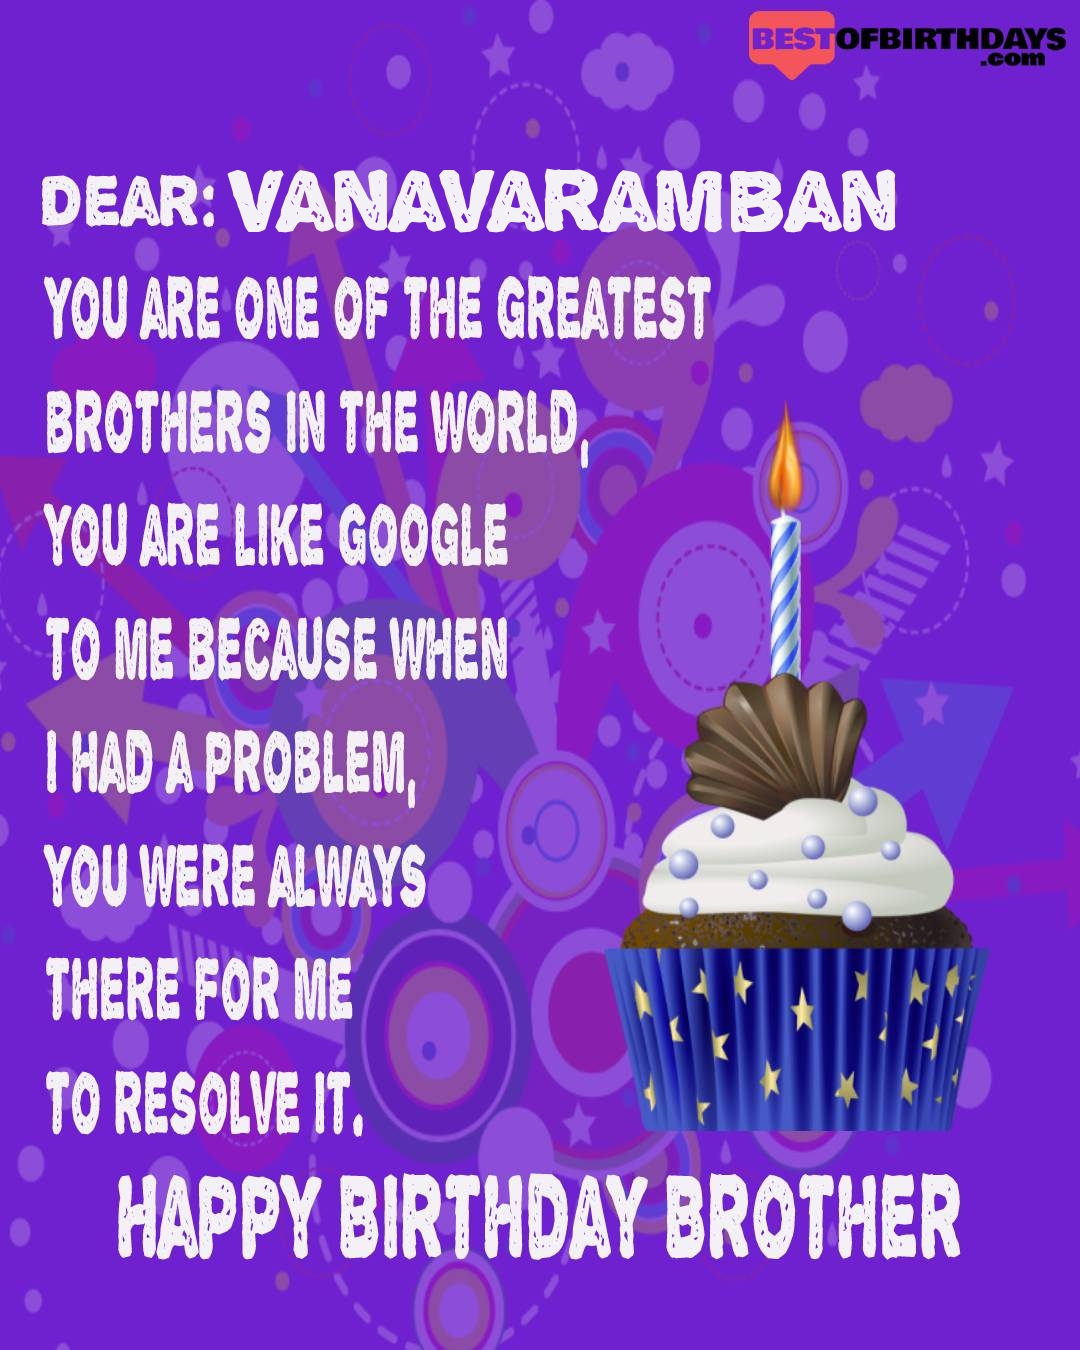 Happy birthday vanavaramban bhai brother bro